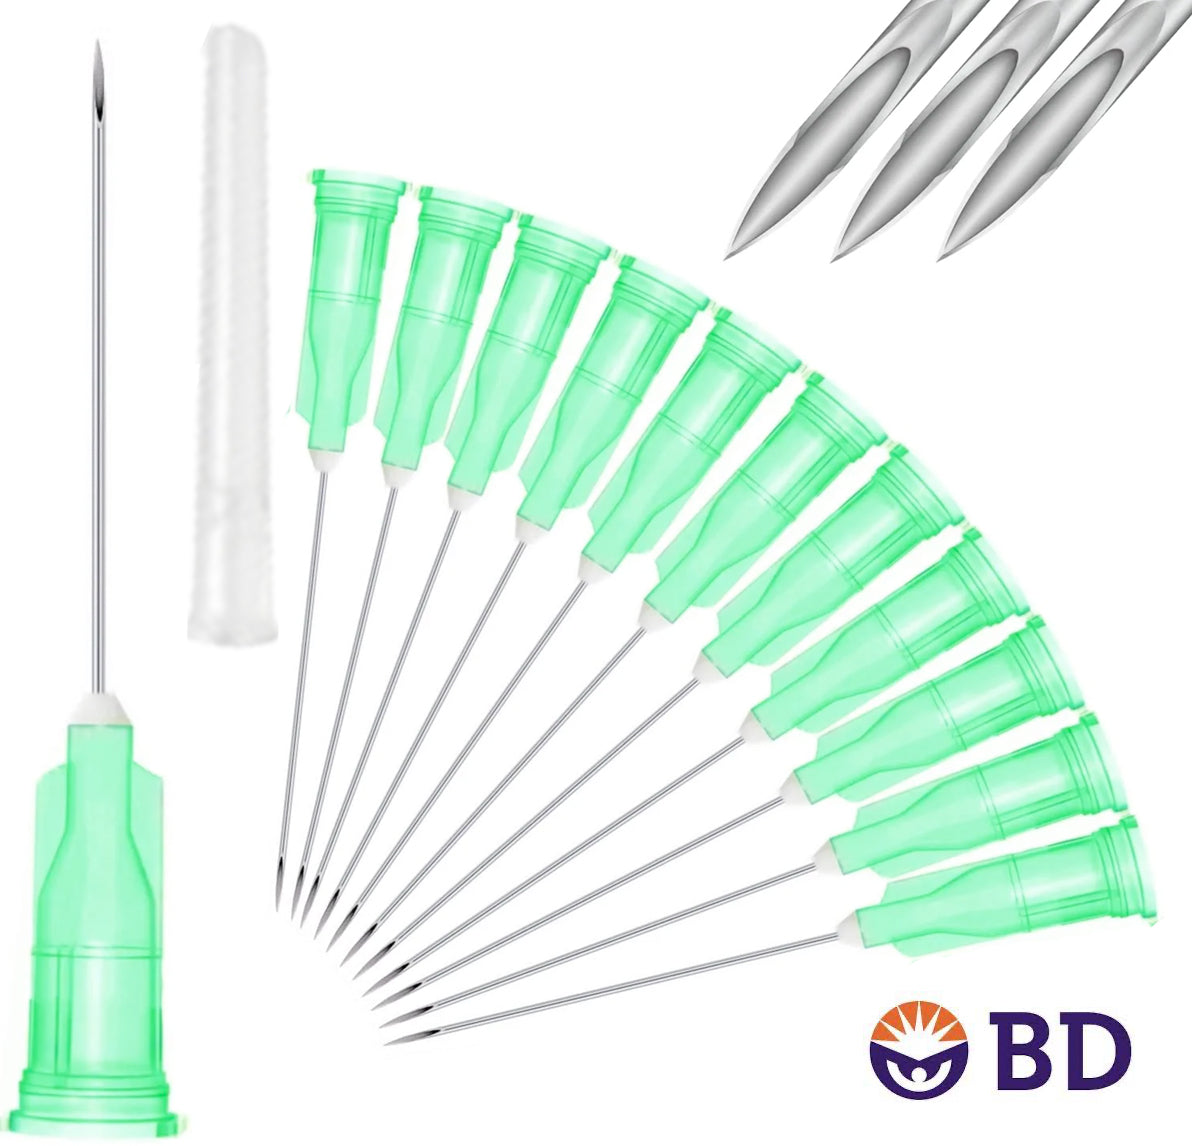 BD 21G x 1.5" Medical Needle (10pk)